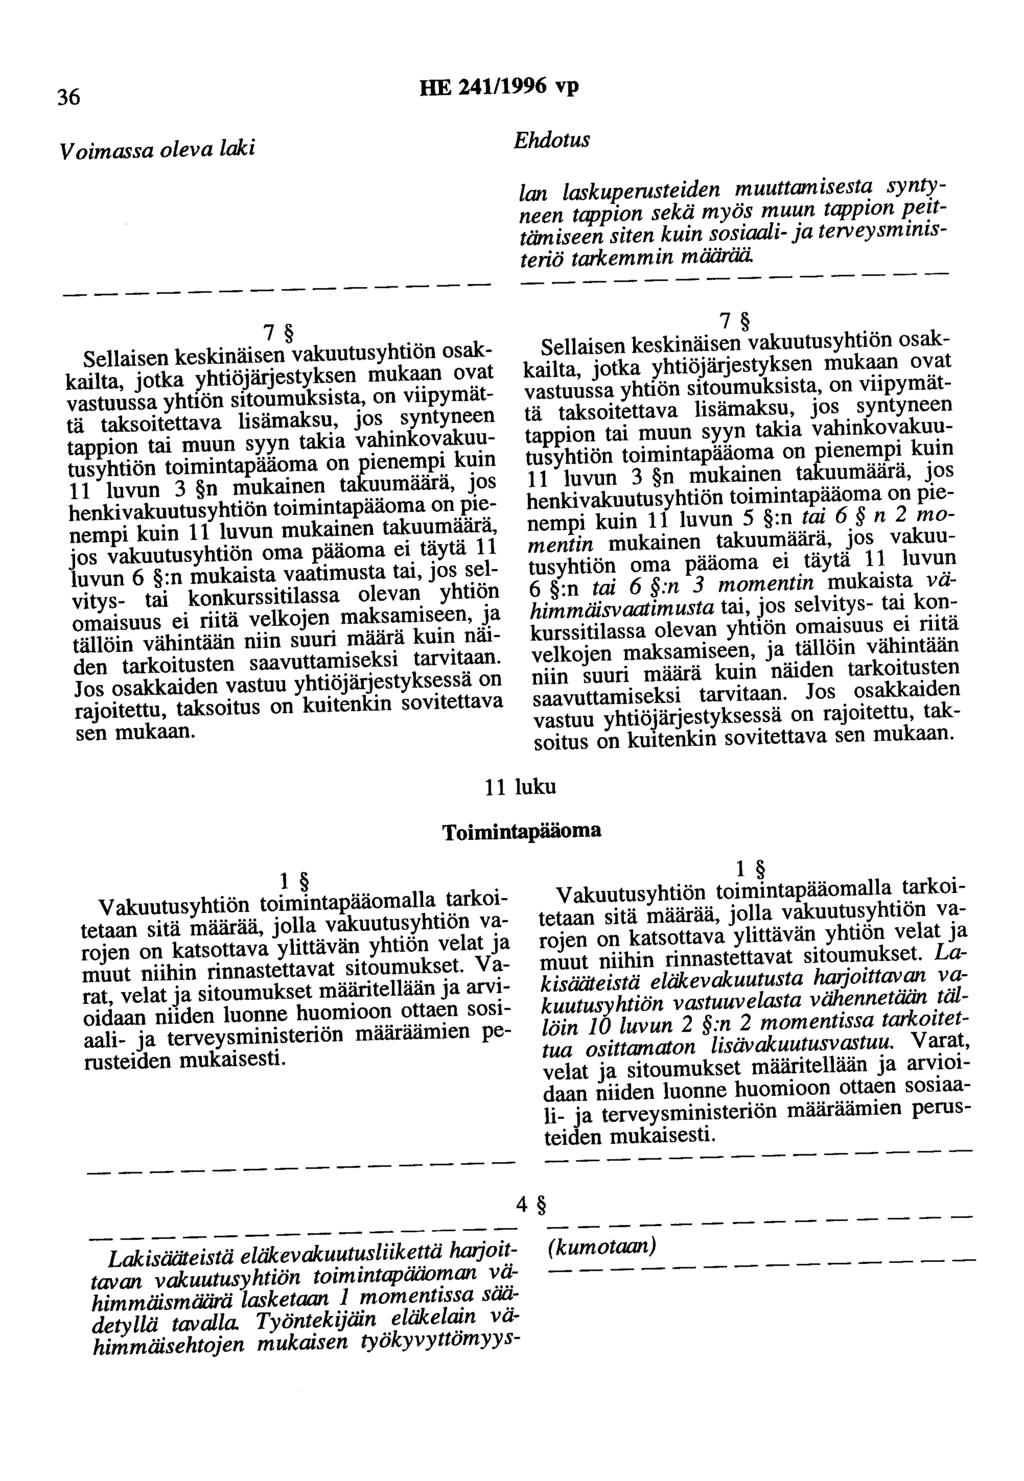 36 HE 241/1996 vp Voimassa oleva laki Ehdotus lan laskuperusteiden muuttamisesta syntyneen tappion sekä myös muun tappion peittämiseen siten kuin sosiaali- ja terveysministeriö tarkemmin määrää.